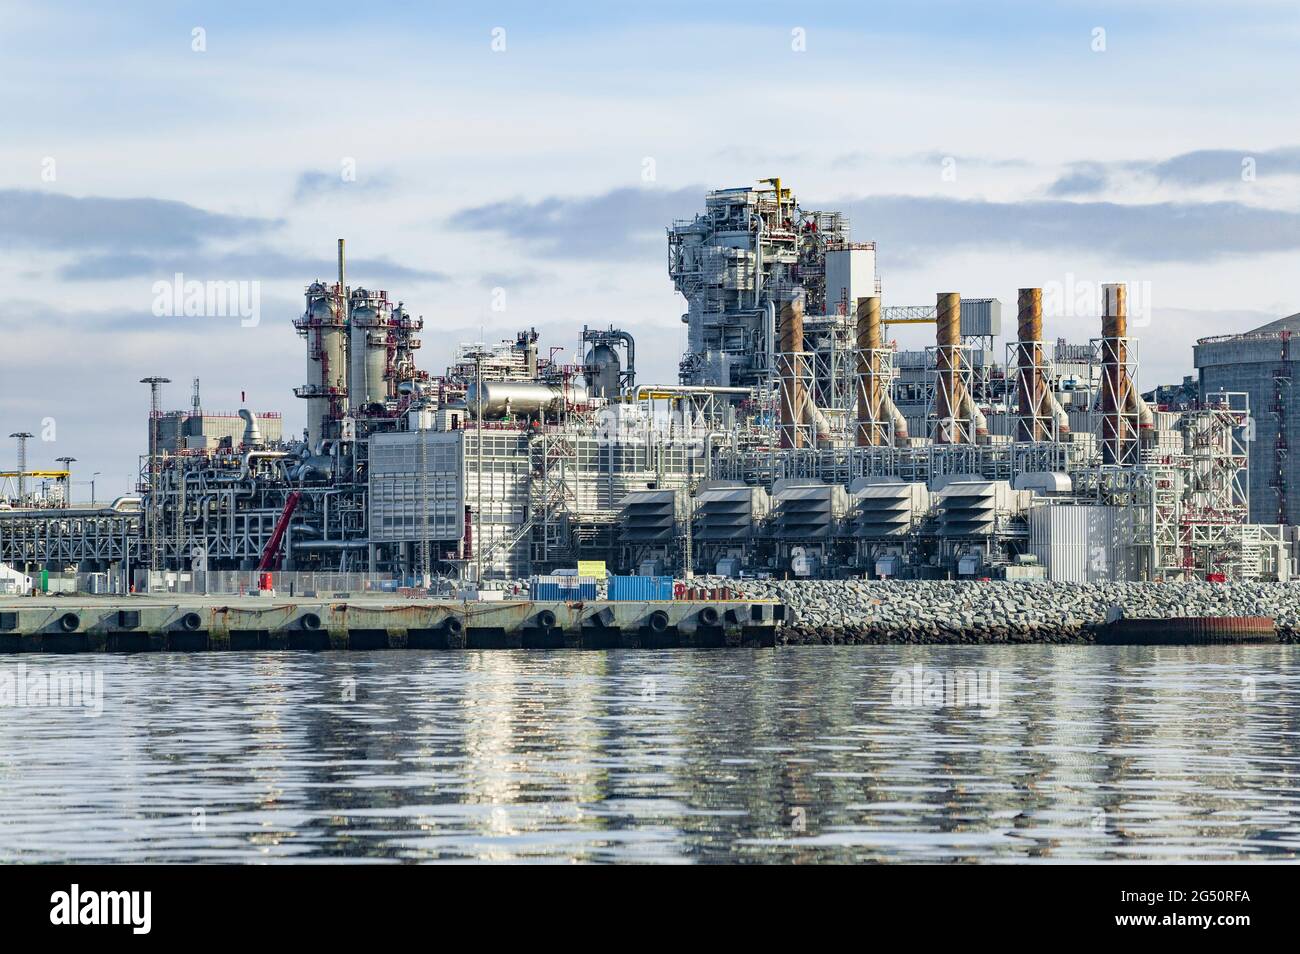 Raffinerie de gaz à Hammerfest, nord de la Norvège Banque D'Images